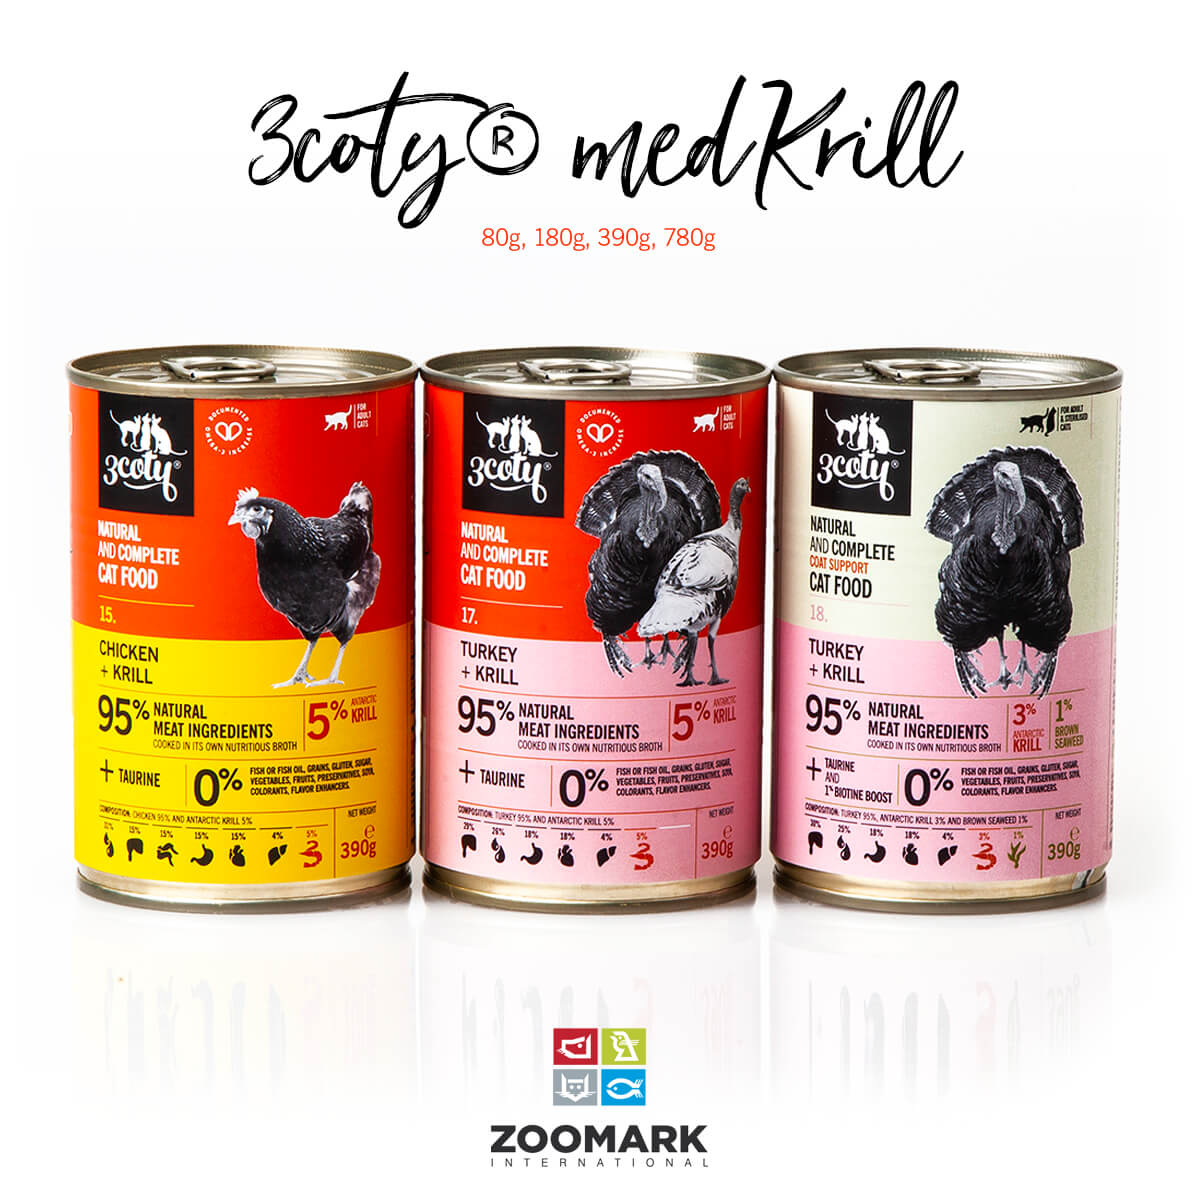 3coty® presenterar nya Antarctic krill sortimentet tillsammans med Aker BioMarine på Zoomark